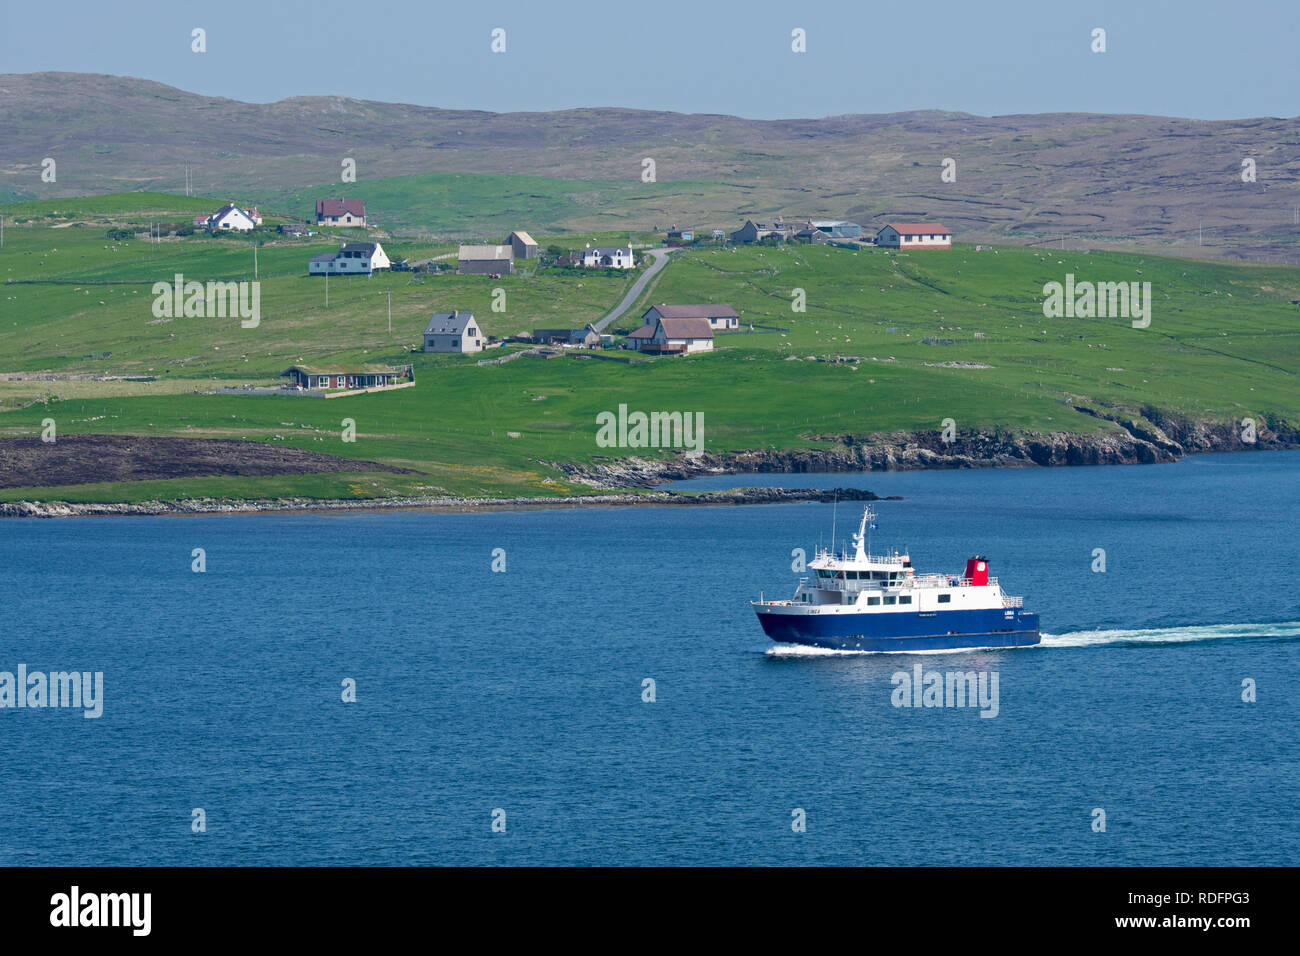 Whalsay ferry boat Linga vela in Laxo Voe, Vidlin sulla terraferma e isole Shetland, Scotland, Regno Unito Foto Stock